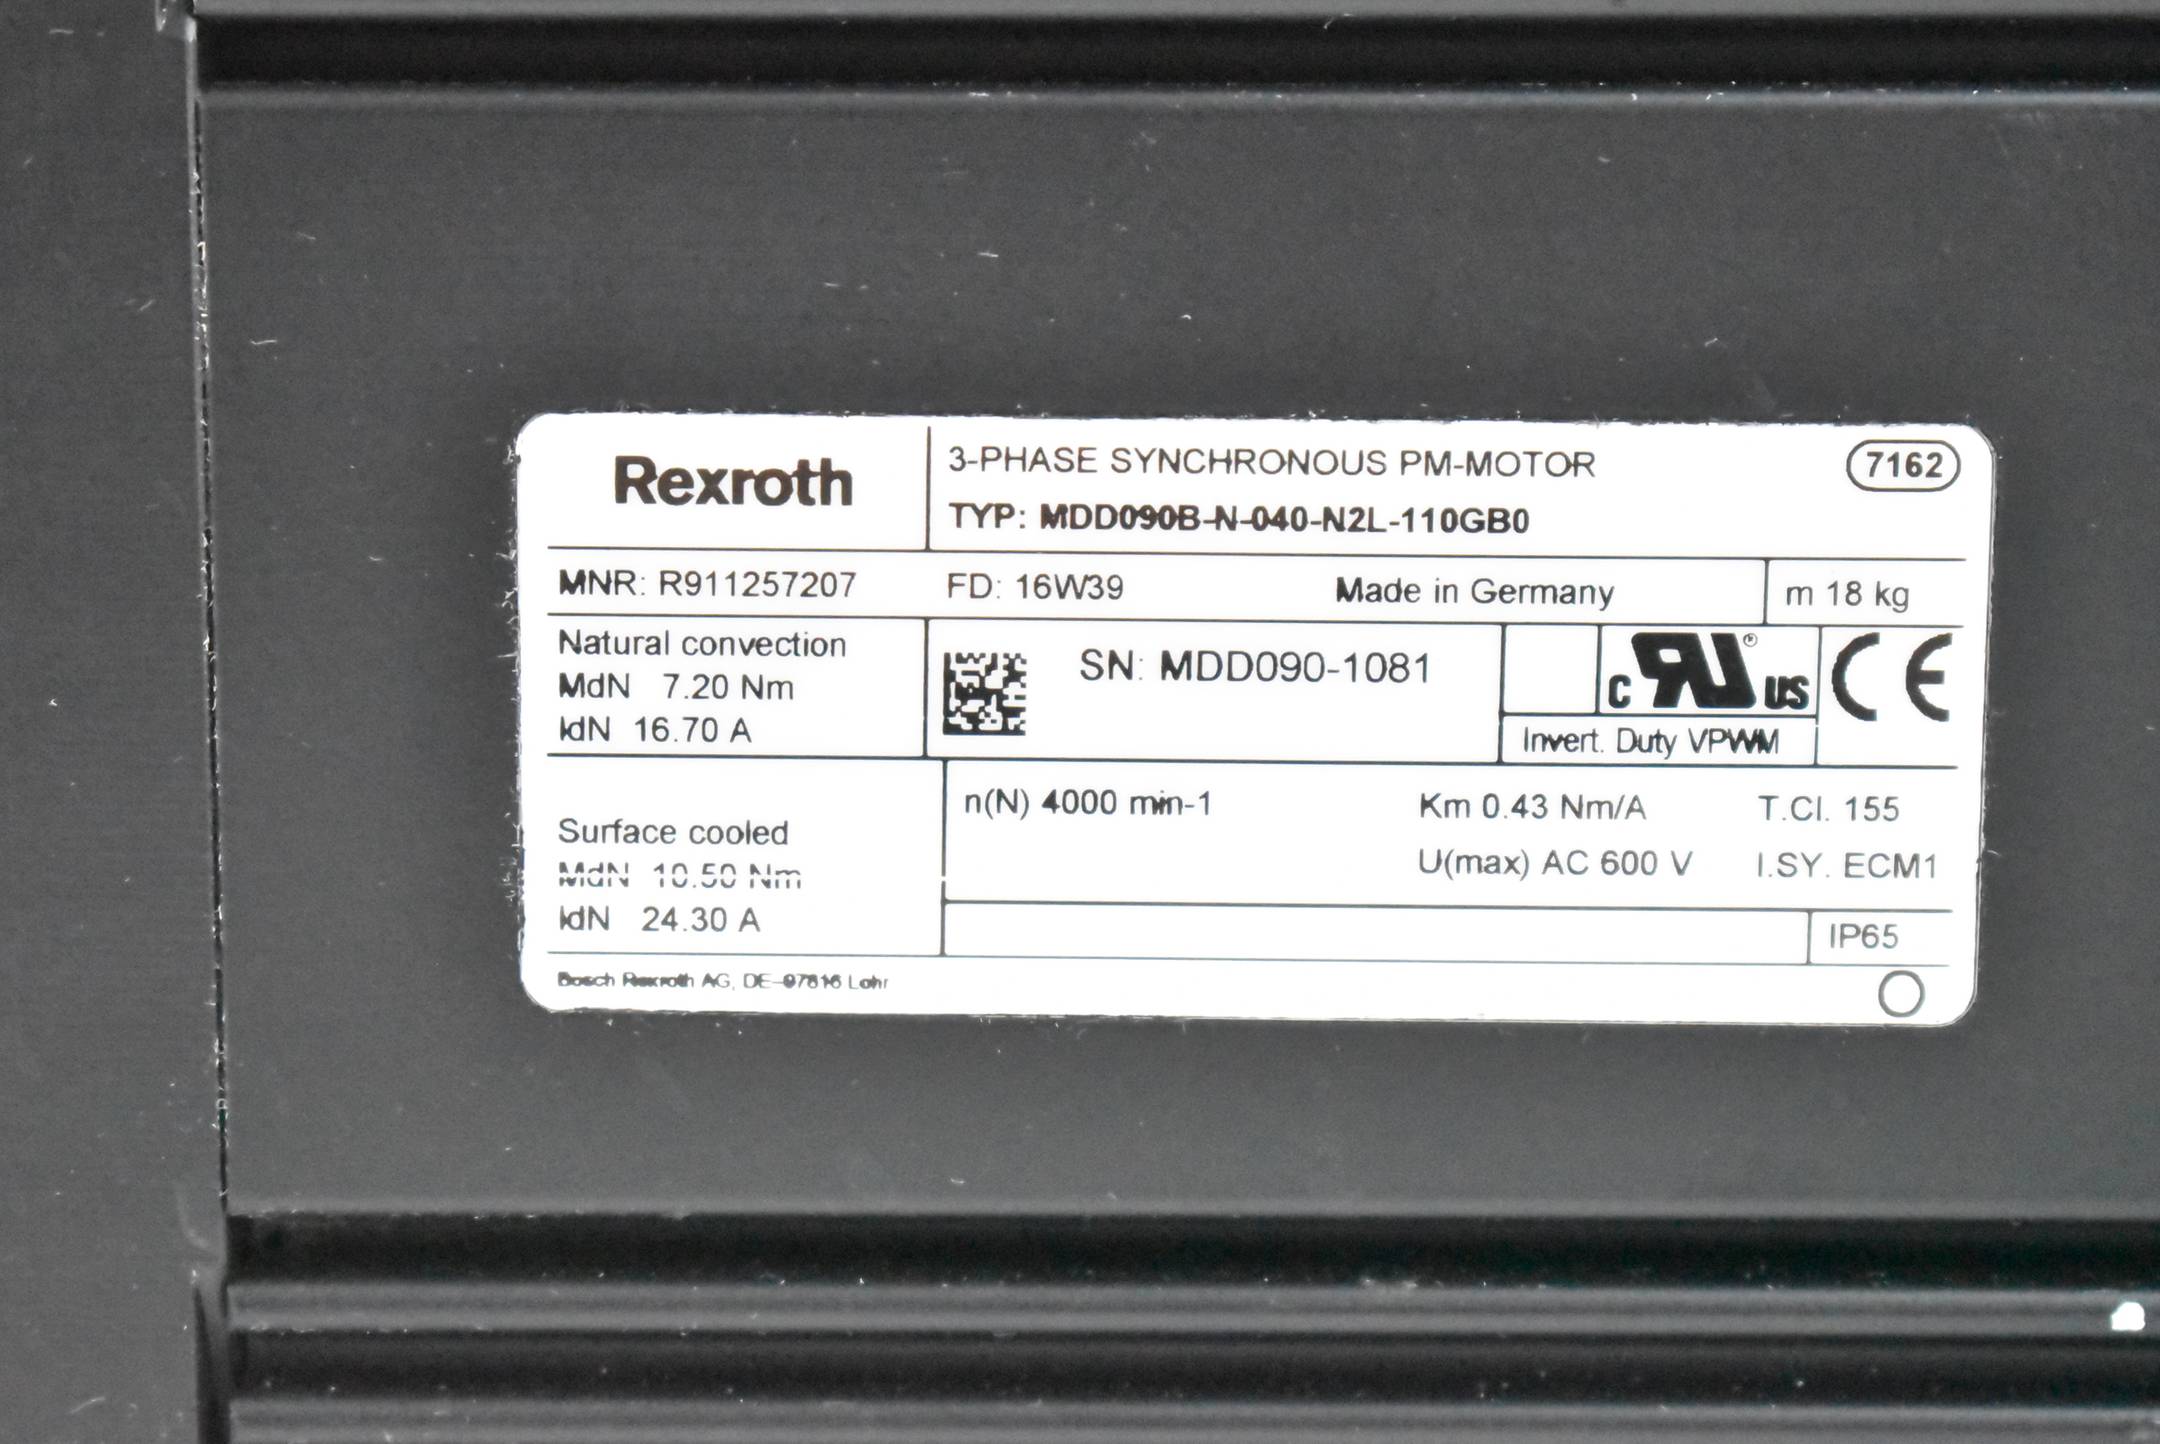 Rexroth Servomotor 7,2Nm 16,7A 4000rpm MDD090B-N-040-N2L-110GB0 ( R911257207 )